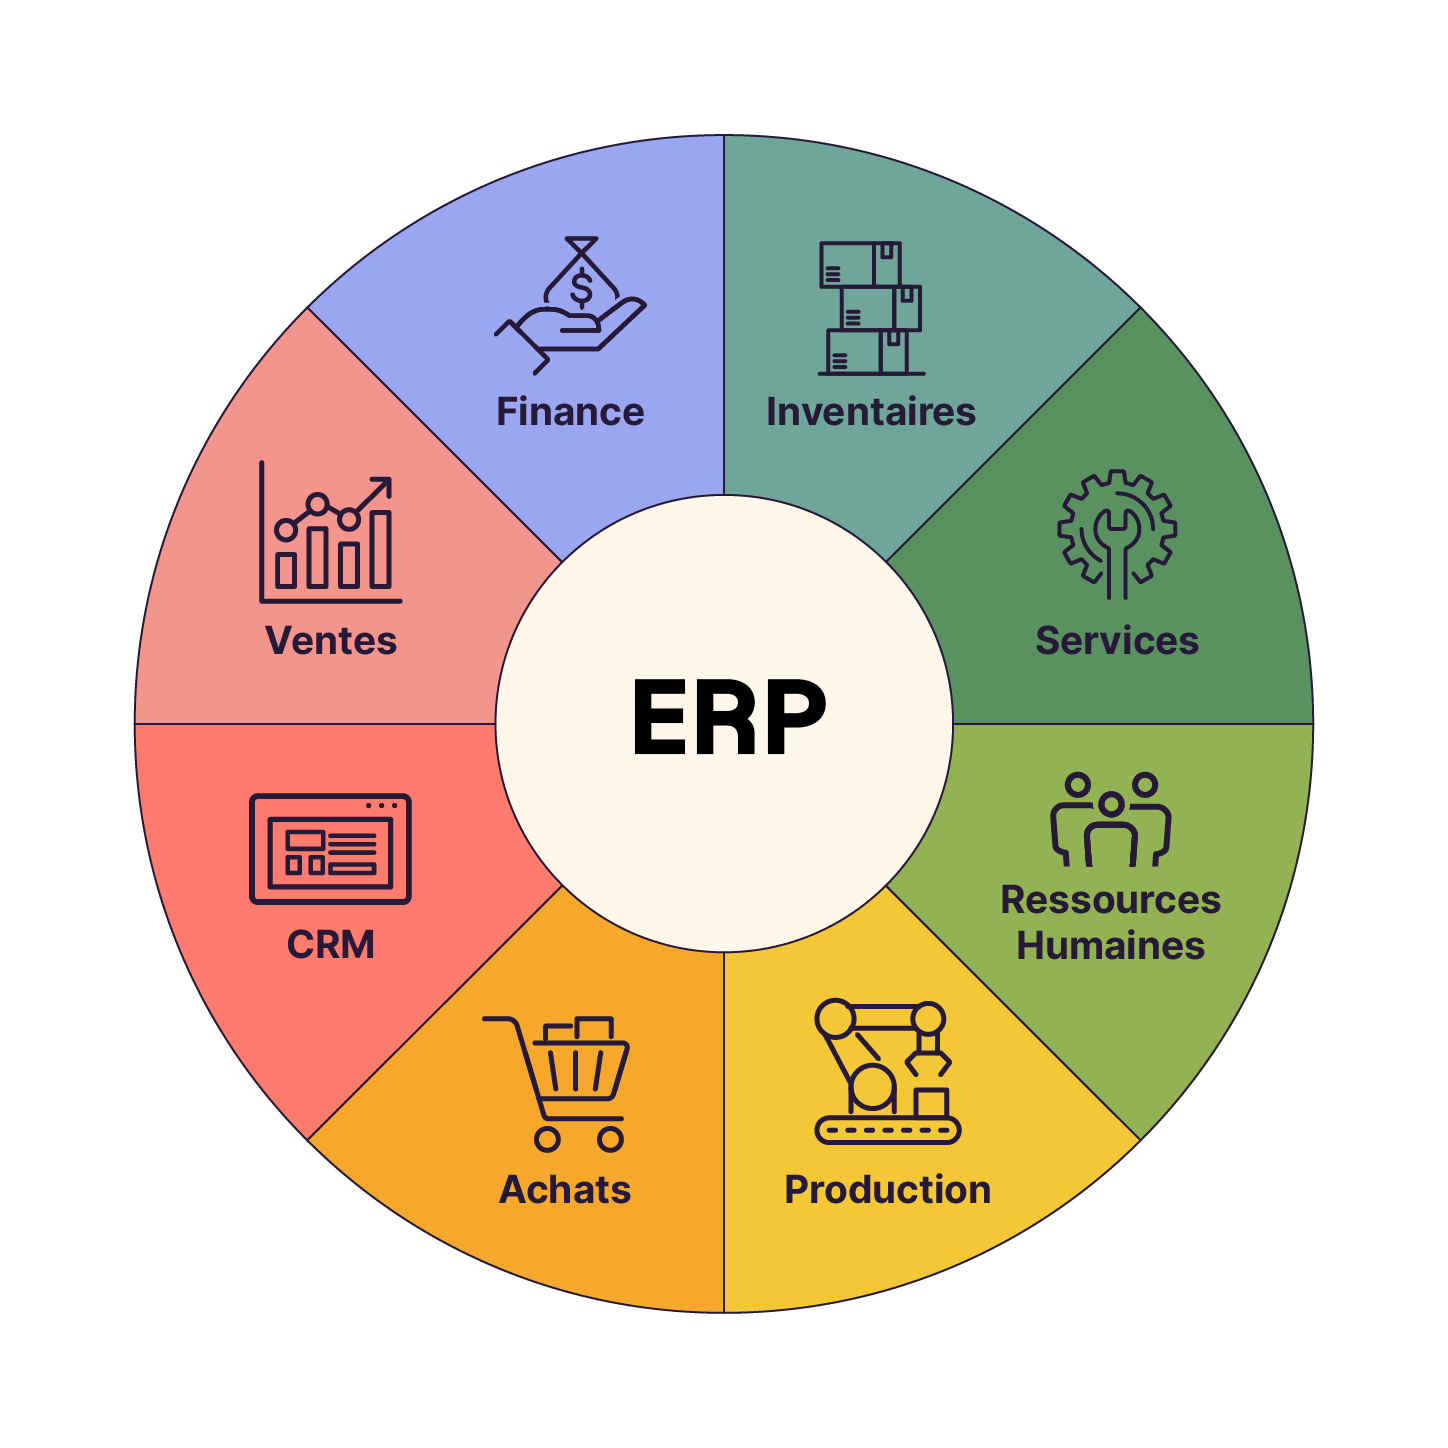 Illustration des différentes données qui peuvent être stockées dans un ERP : inventaires, services, RH, production, achats, CRM, ventes, finance.